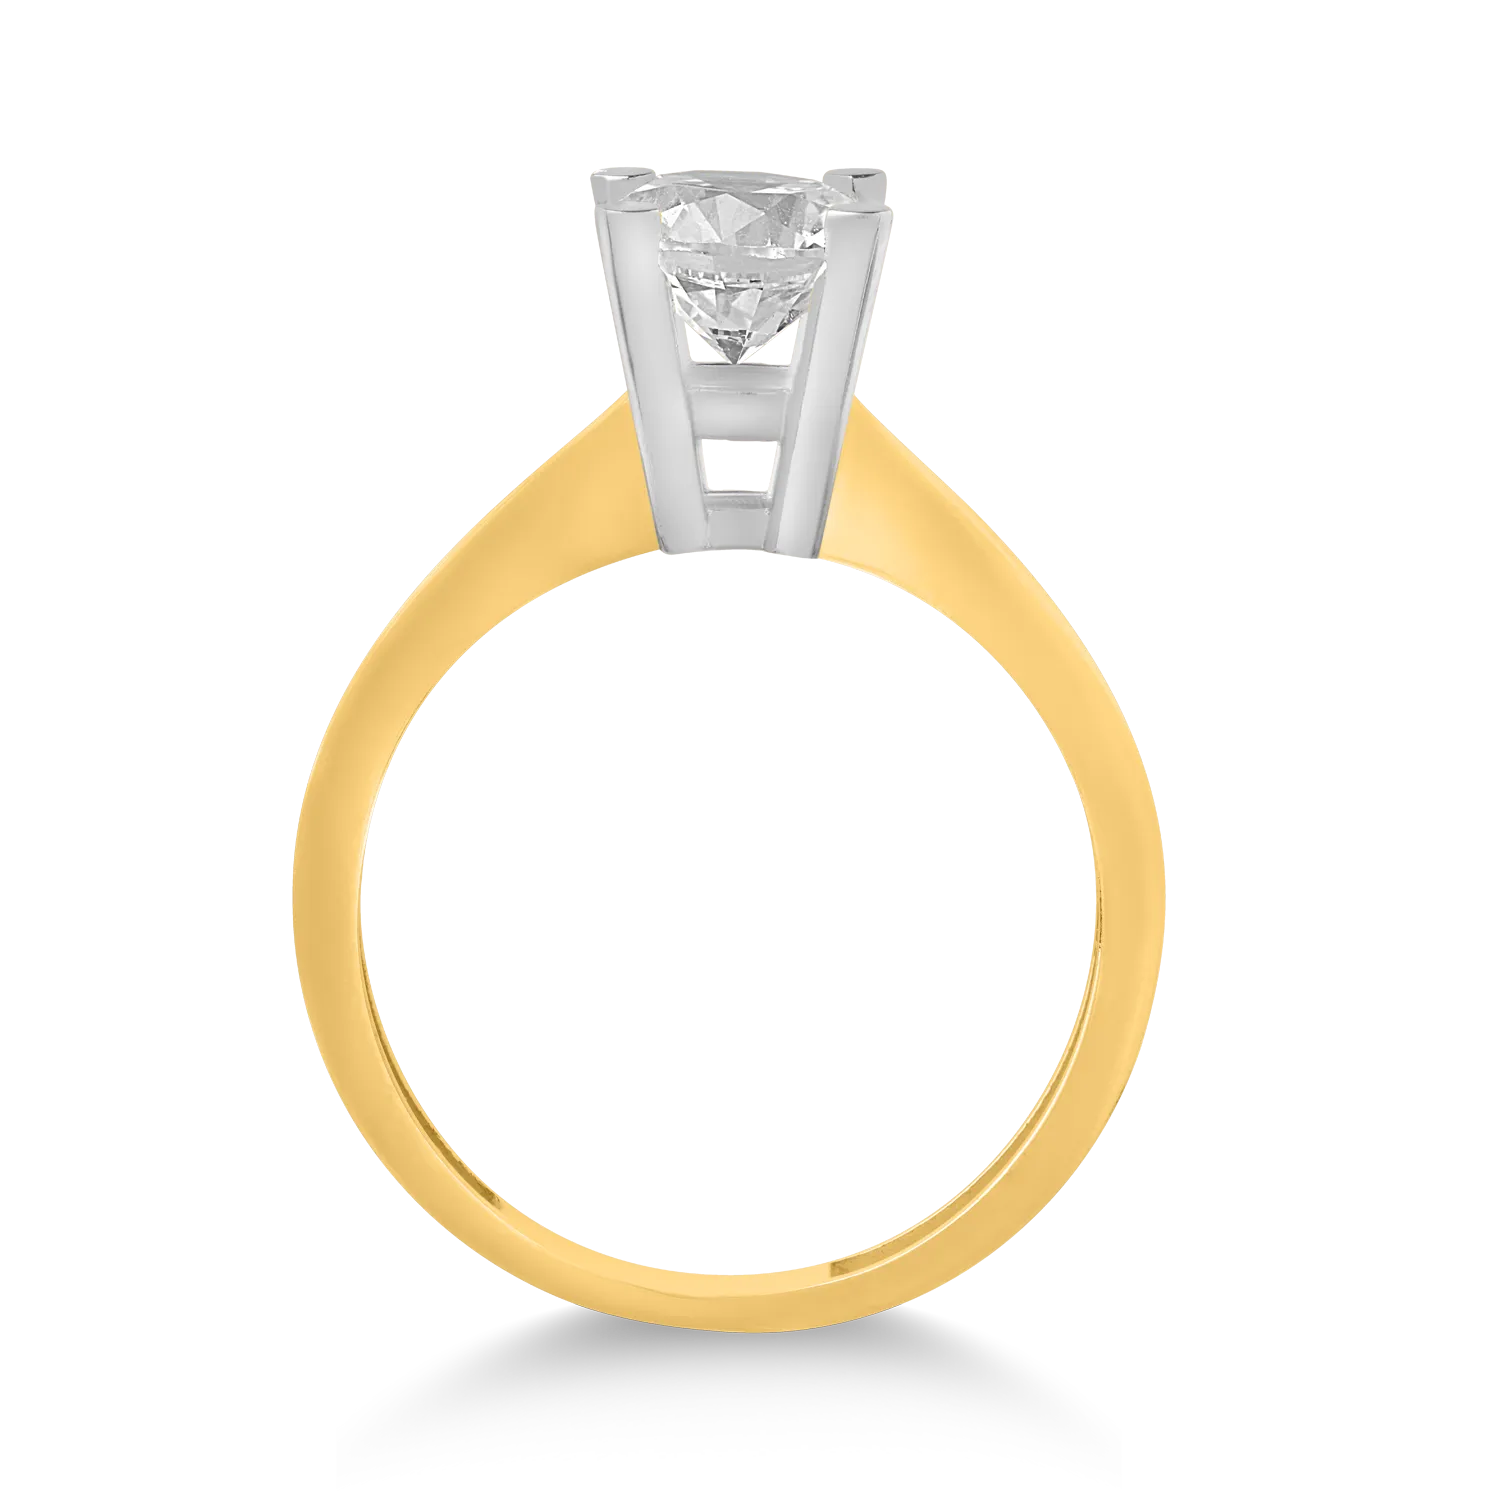 14 karátos sárga arany eljegyzési gyűrű